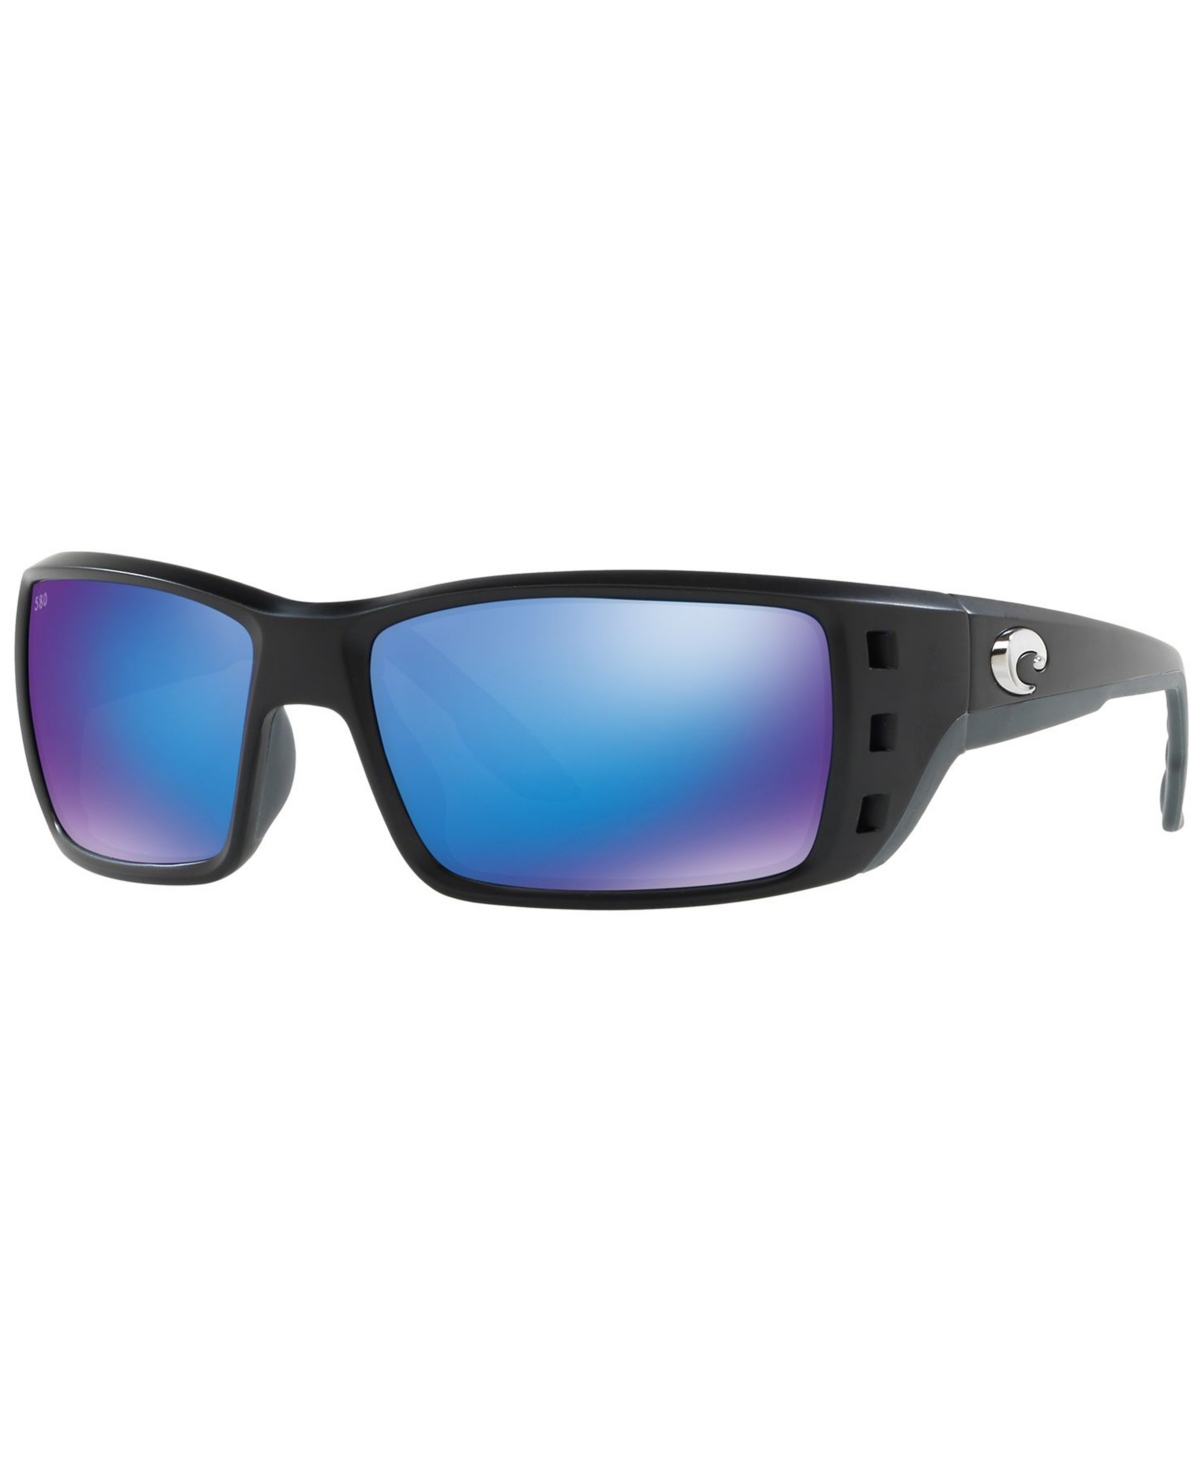 Polarized Sunglasses, Permit 62 - BLACK MATTE/GREEN MIRROR